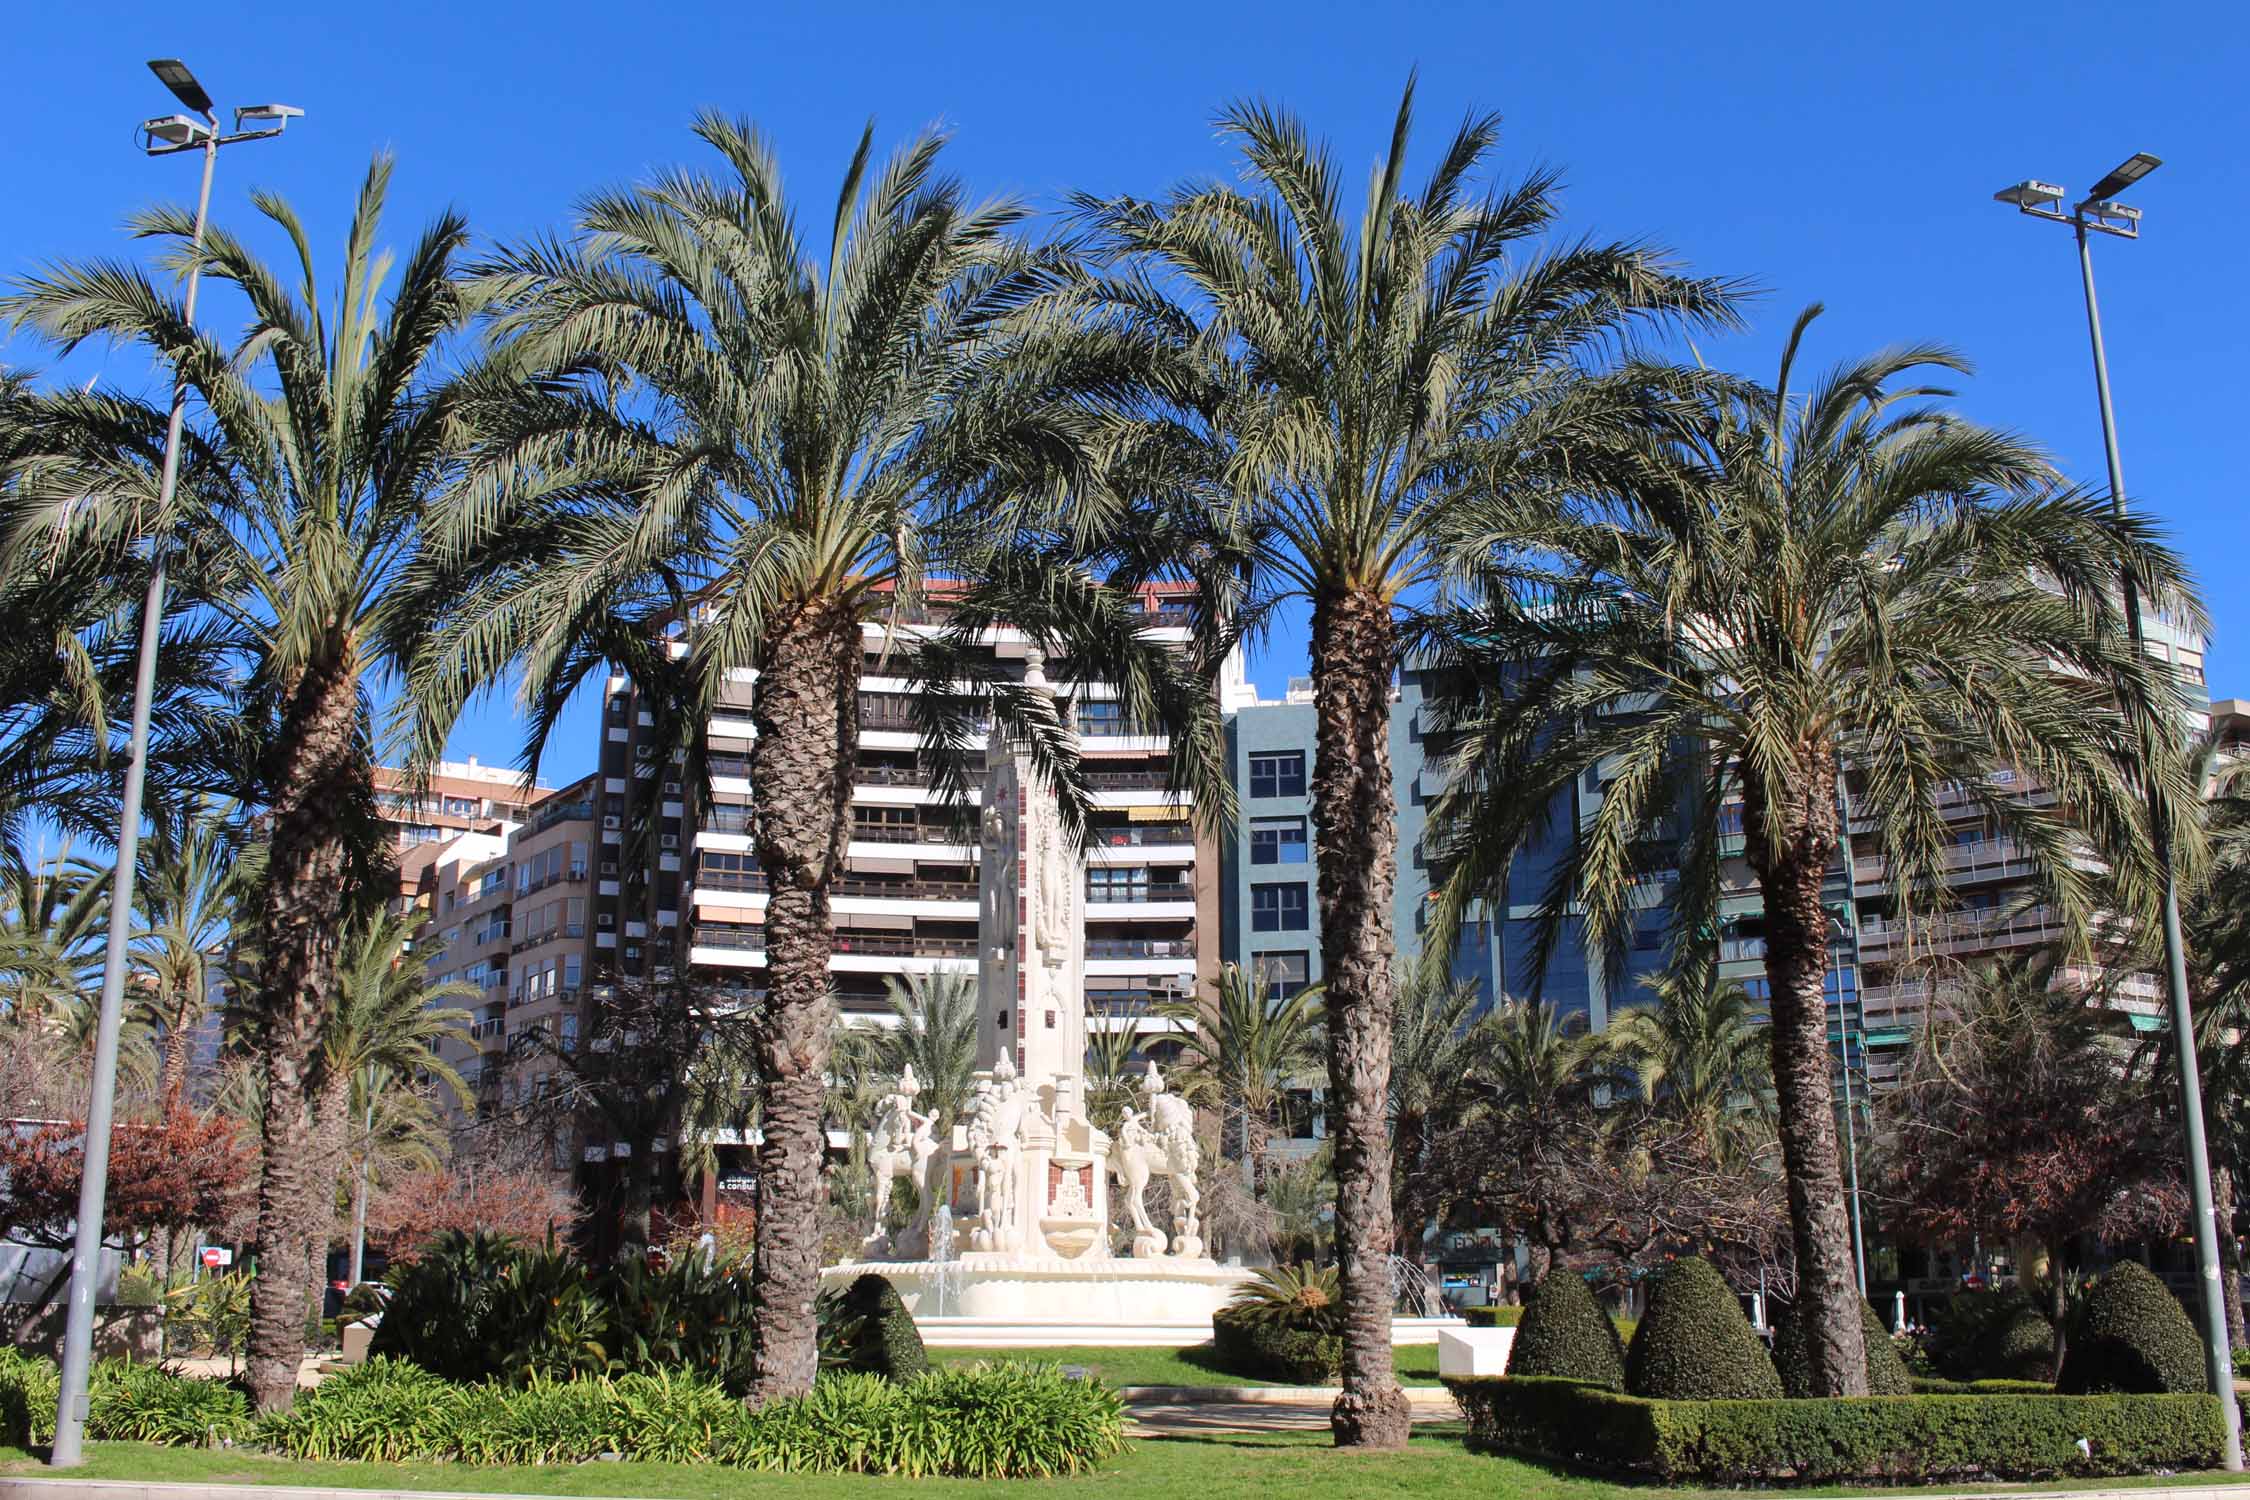 Alicante, place de los Luceros